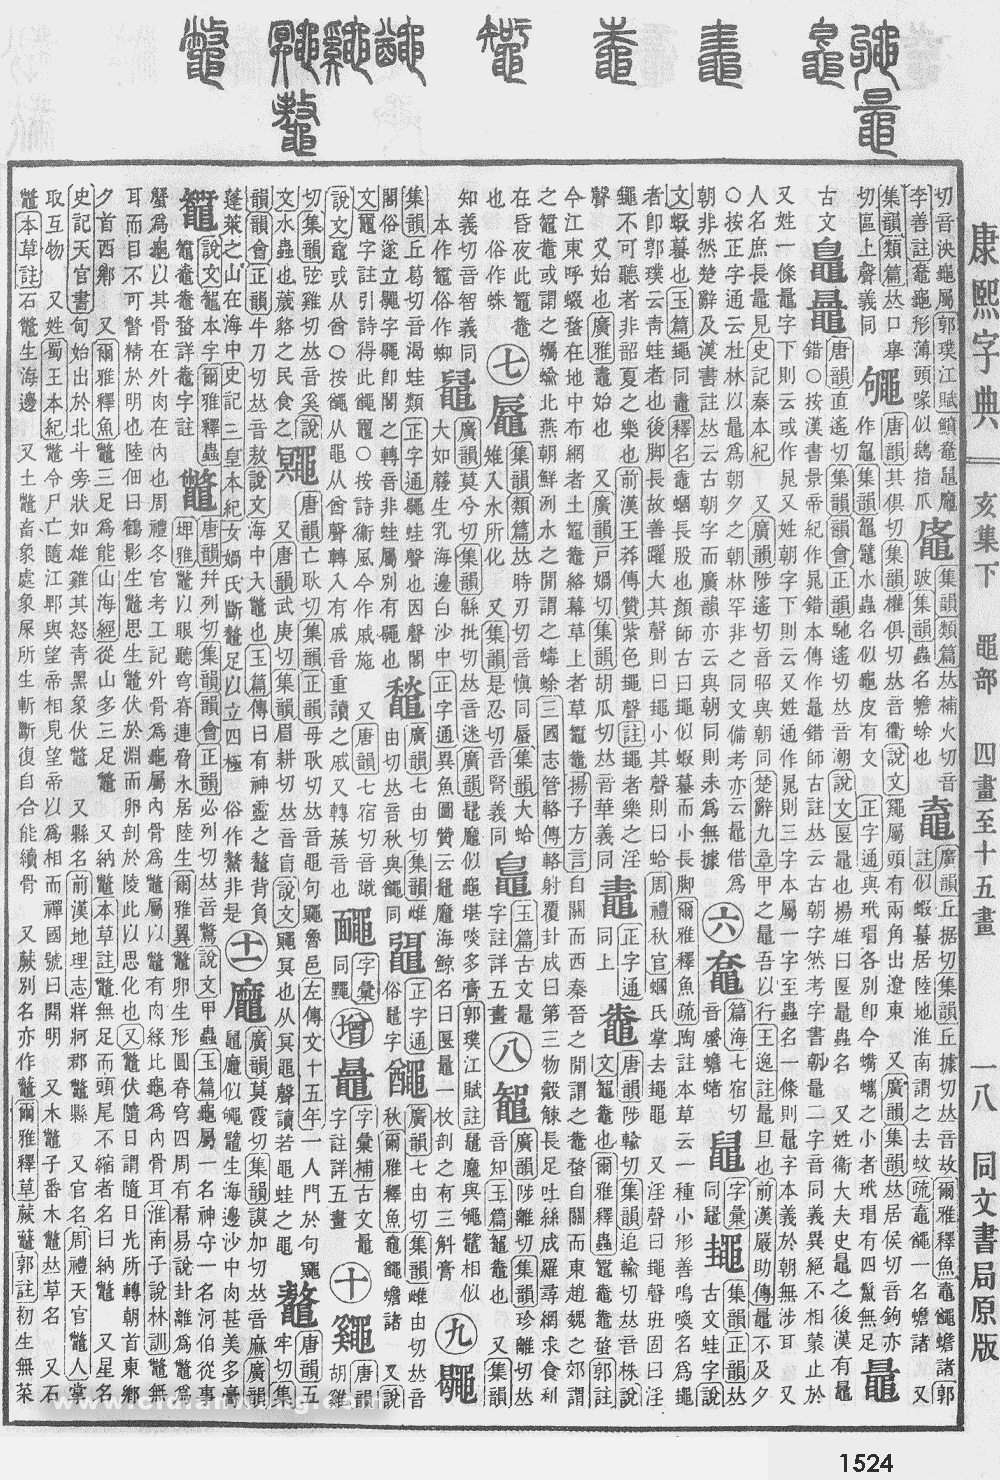 康熙字典掃描版第1524頁